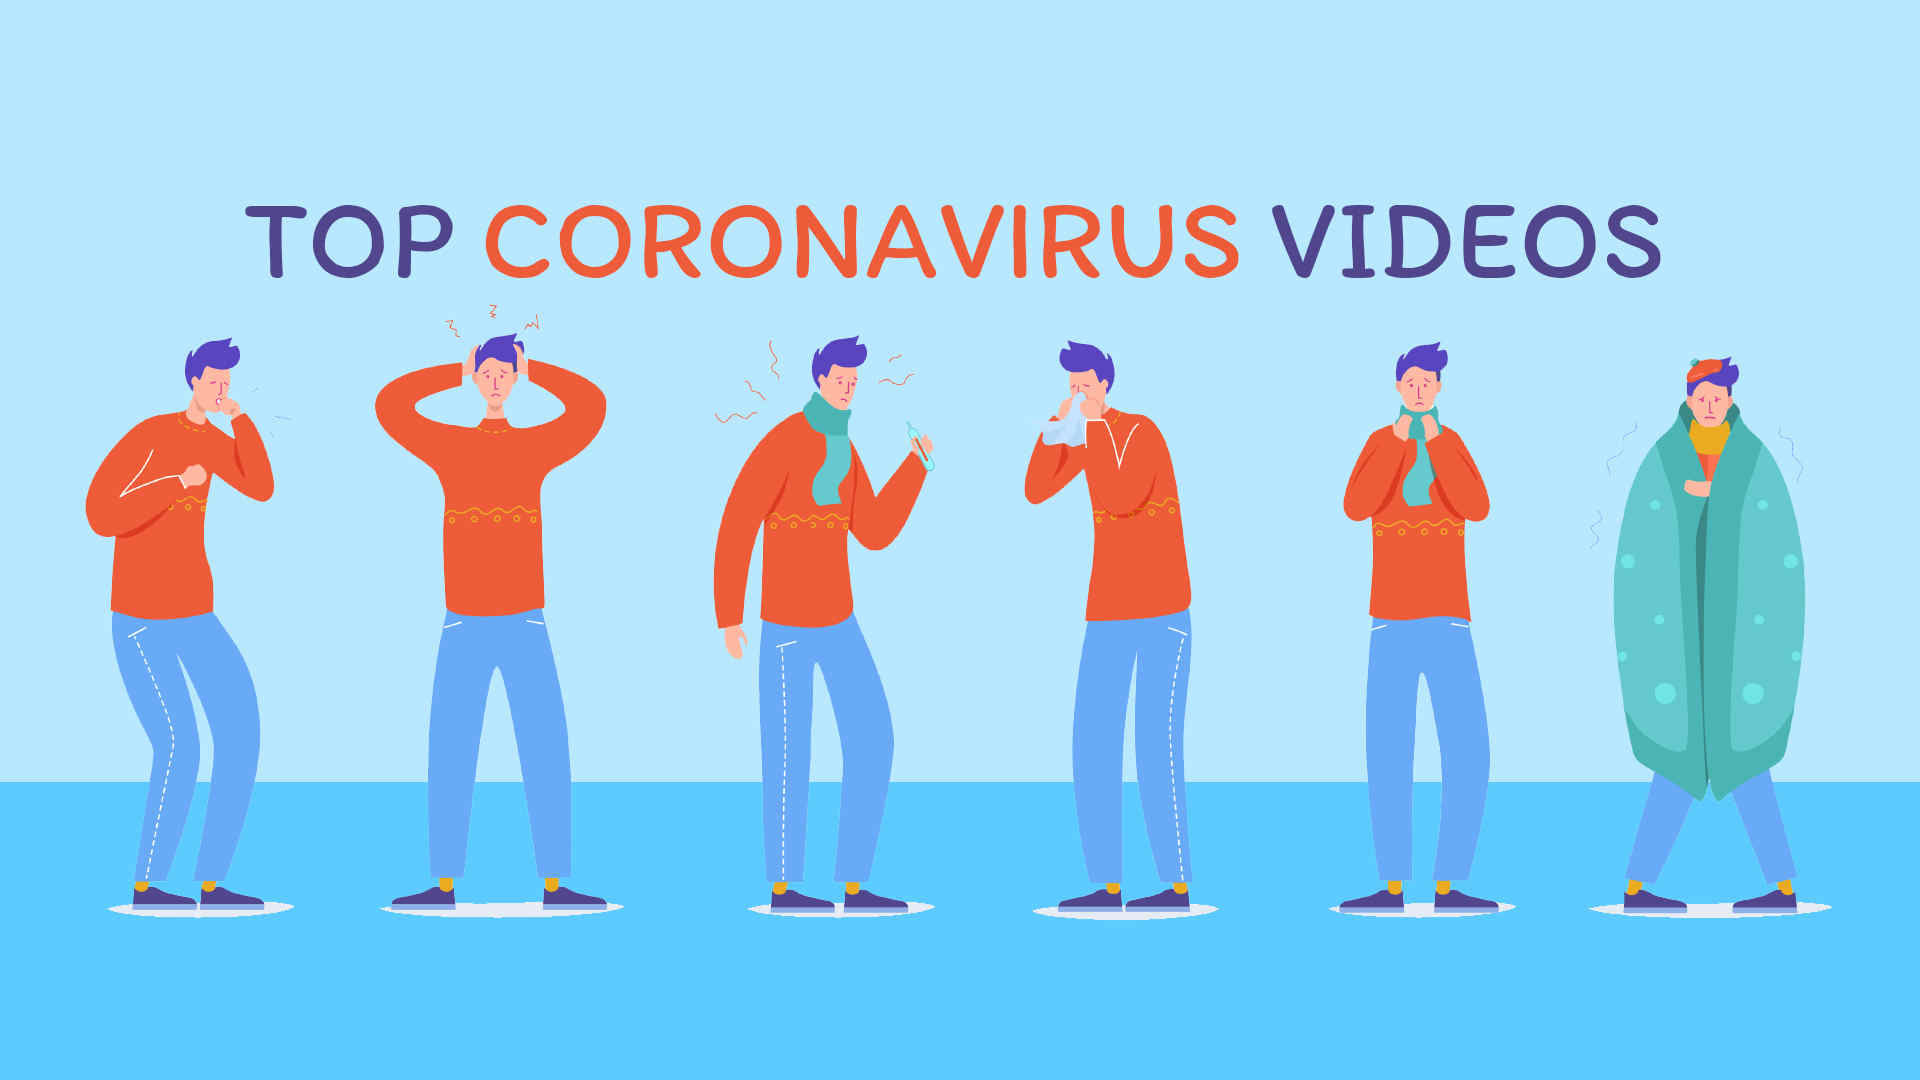 Coronavirus Animated Video 2020